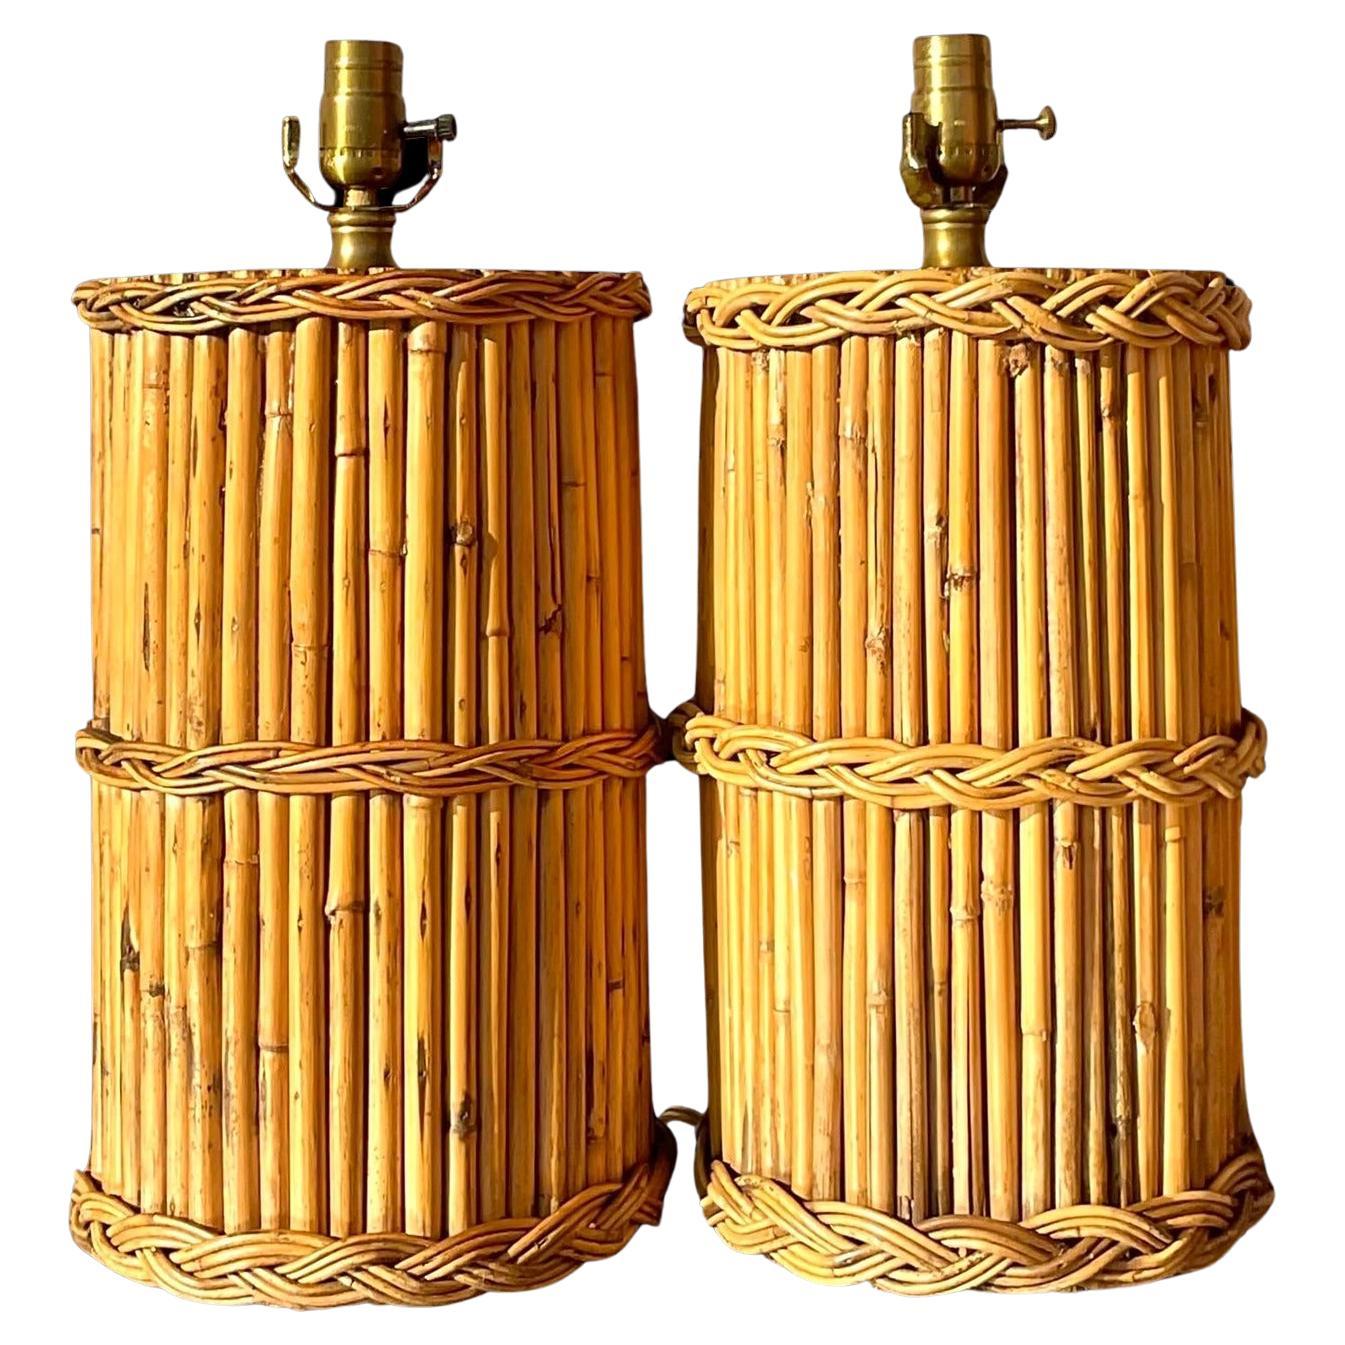 Geflochtene Rattan-Tischlampen im Vintage-Stil - ein Paar